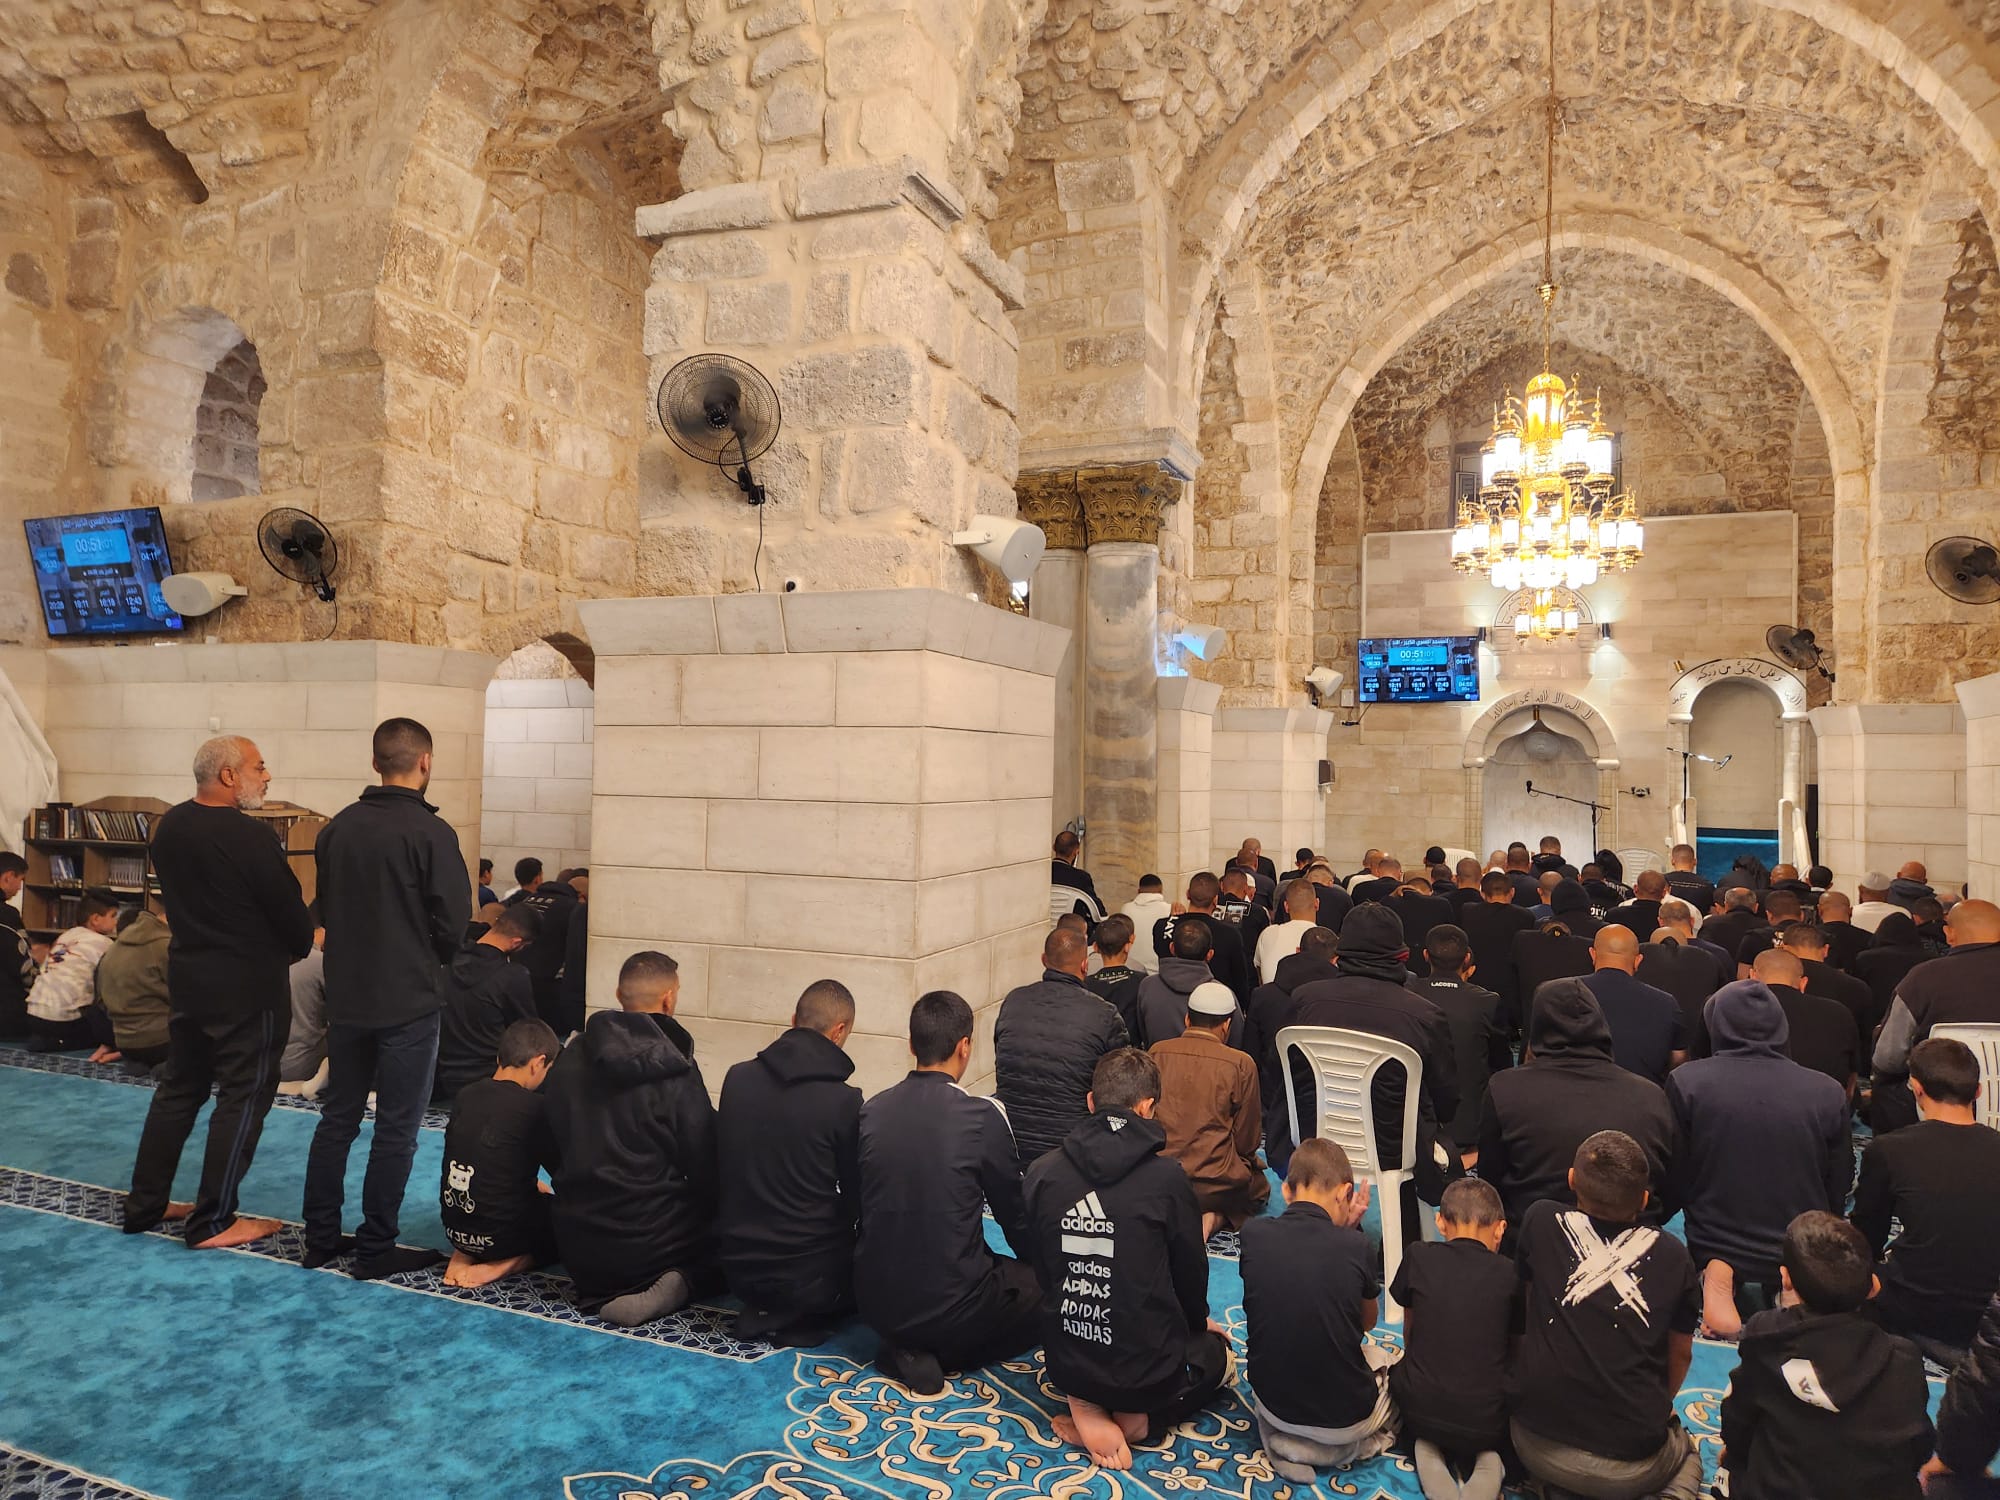  فيديو: إحياء ليلة القدر في المسجد العمري الكبير في اللد